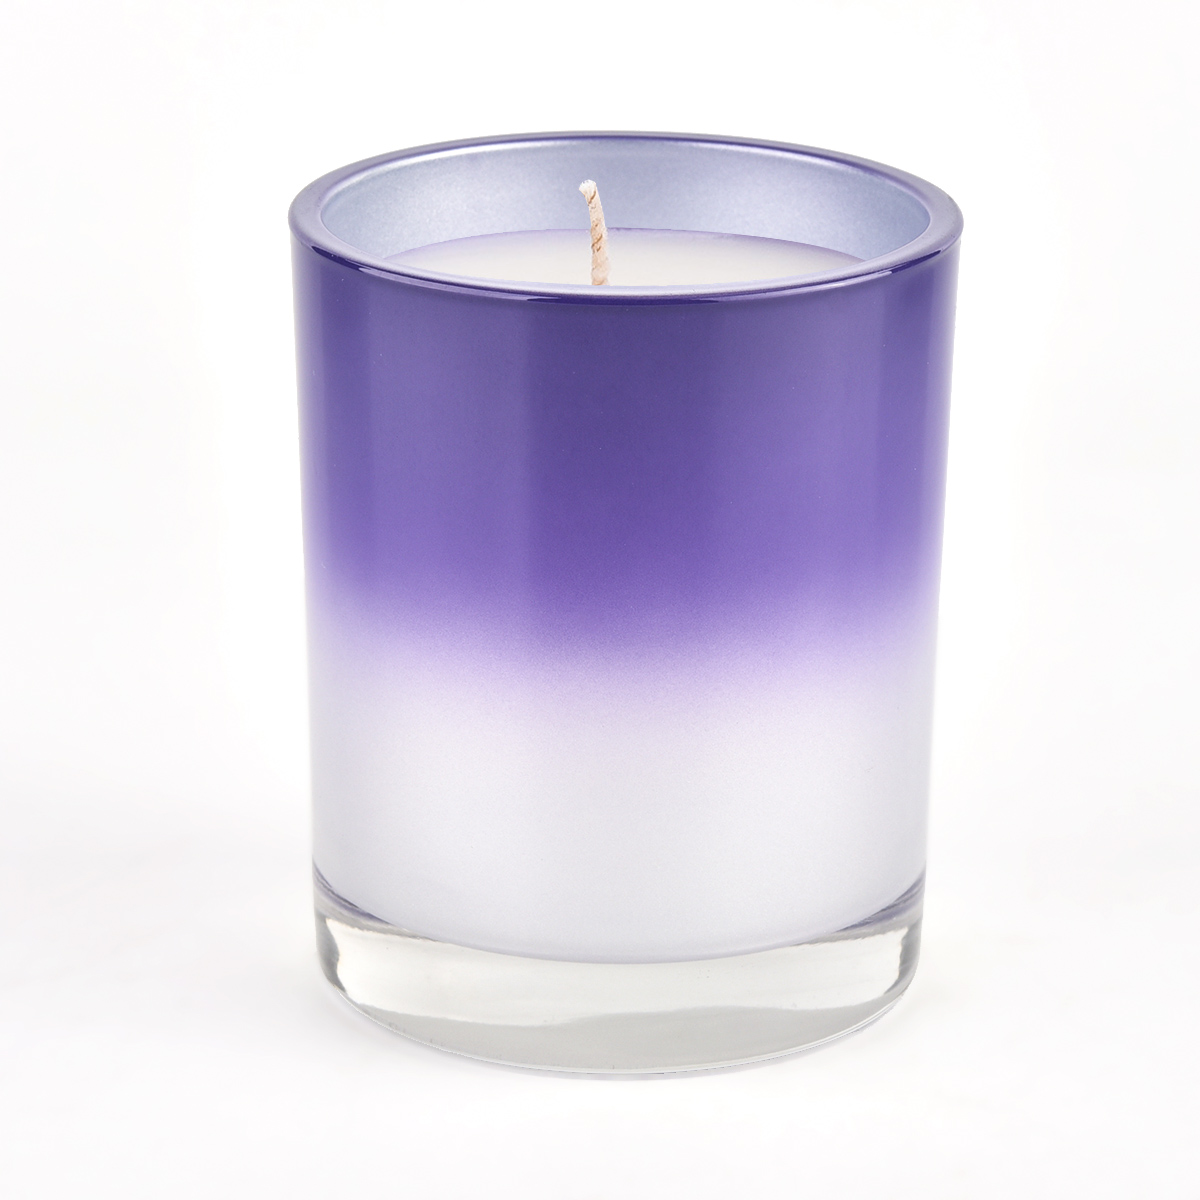 Borcan de lumânări din sticlă lucioasă cu design nou, cu furnizor violet degradat